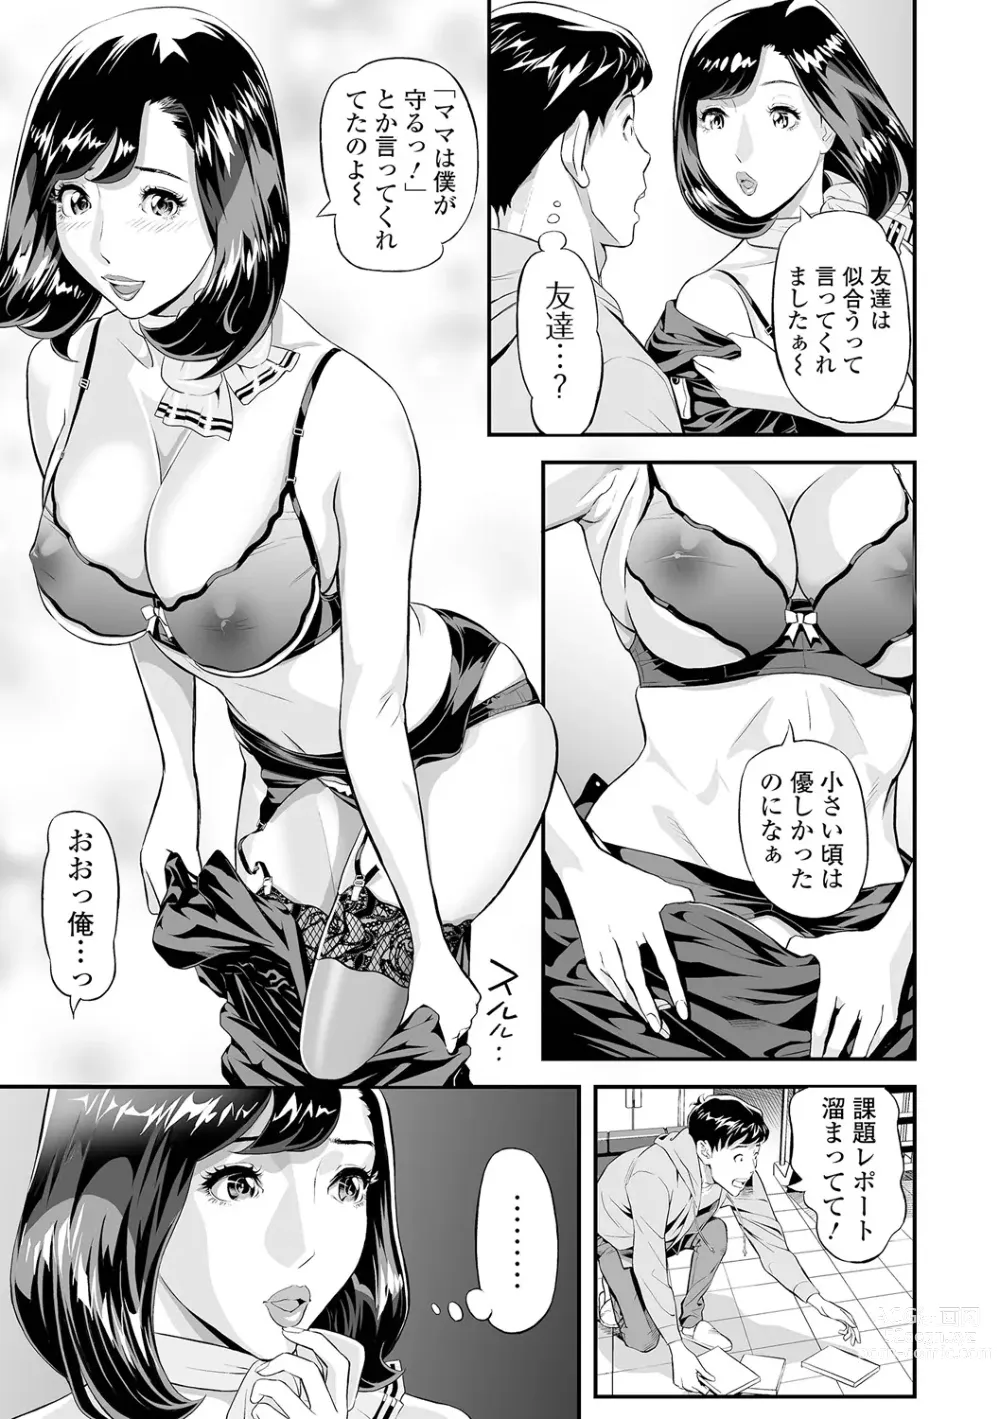 Page 7 of manga Elegant Erogant